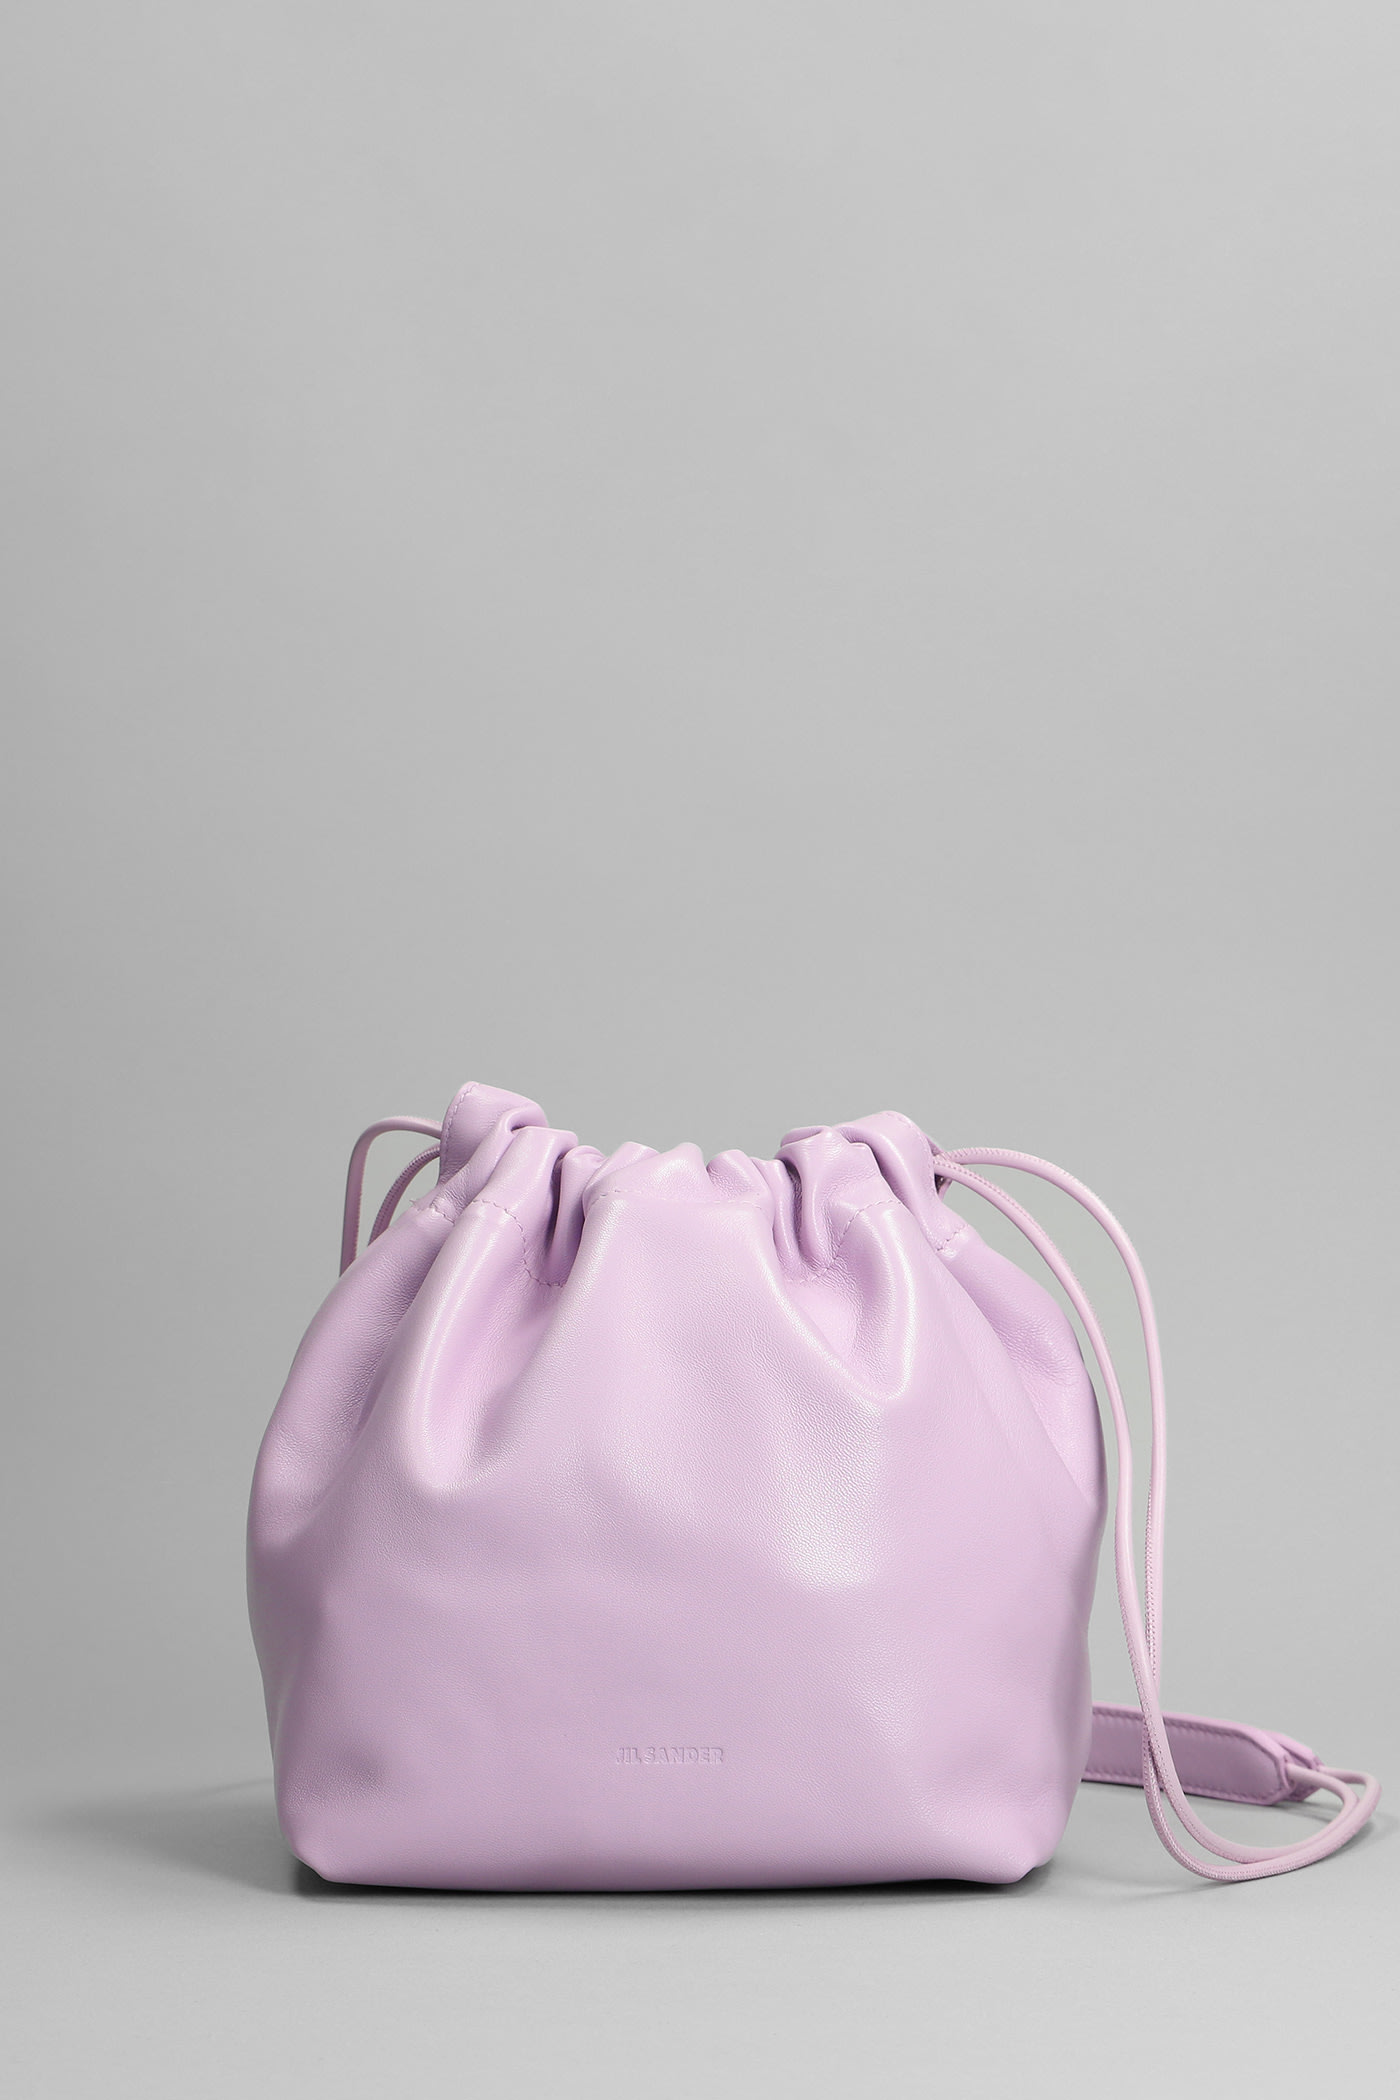 Jil Sander Dumpling Shoulder Bag In Viola Leather